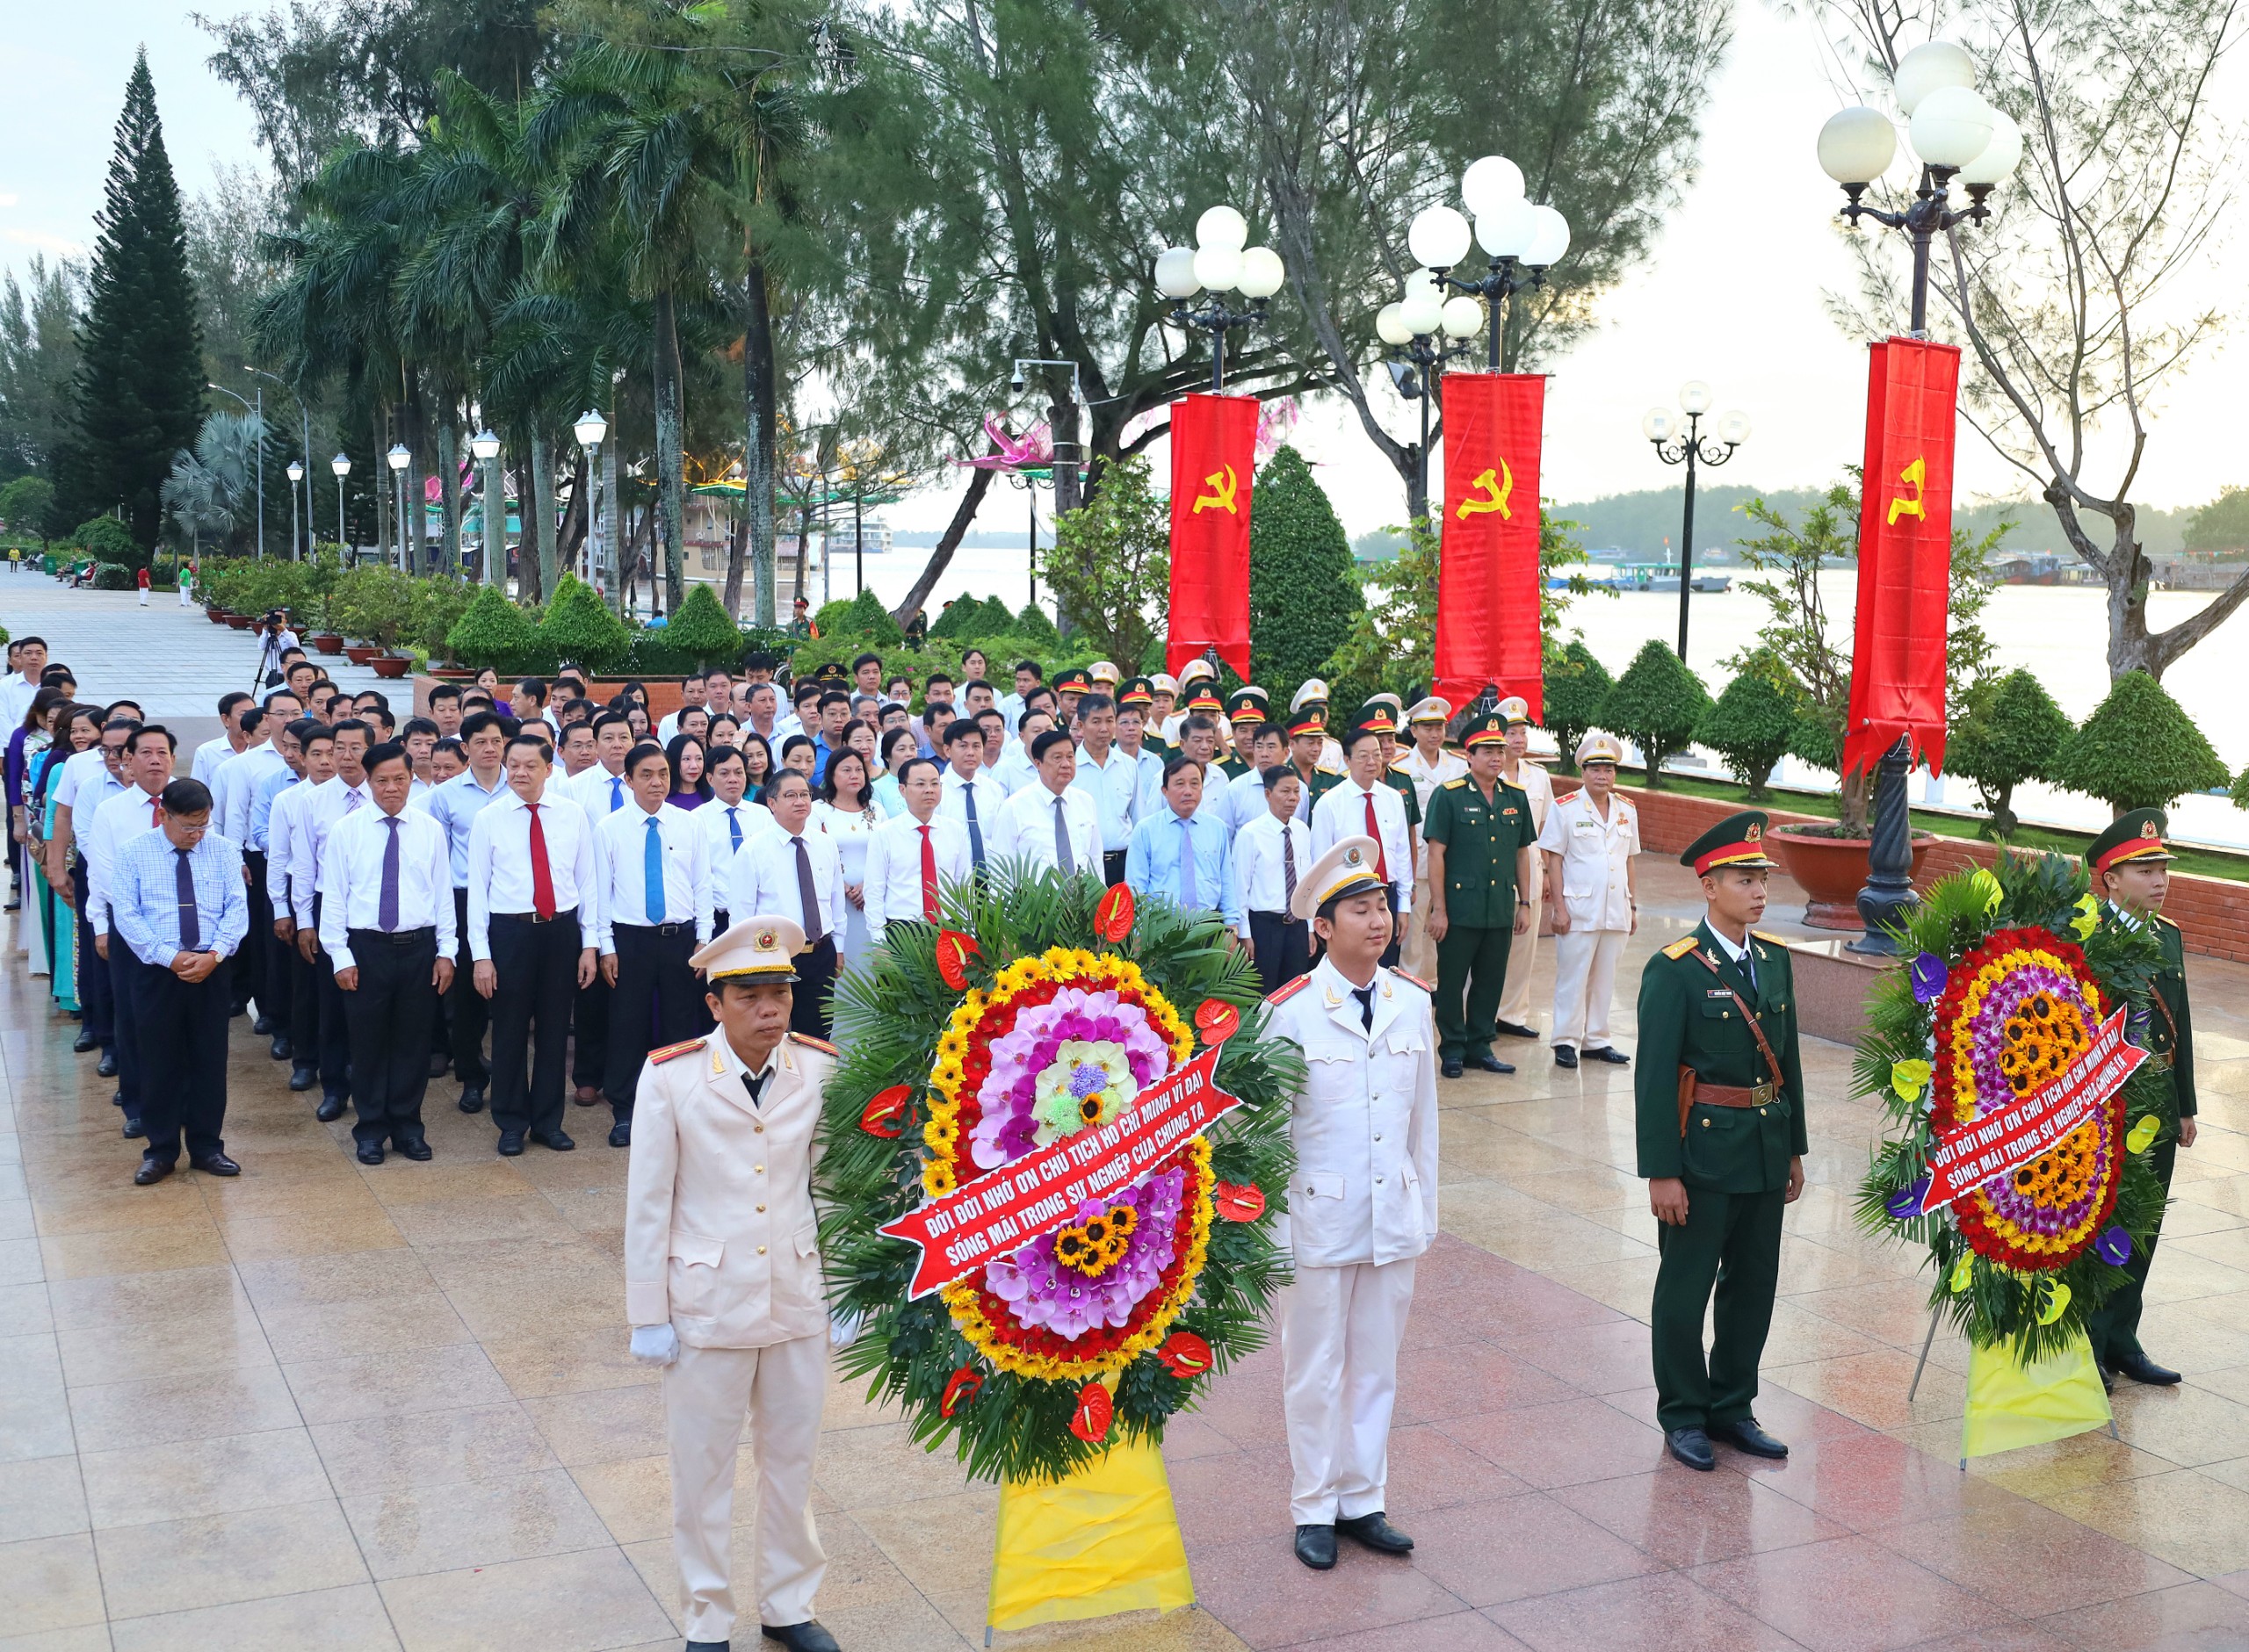 Đoàn đại biểu viếng Tượng đài Bác Hồ tại Bến Ninh Kiều, quận Ninh Kiều, TP. Cần Thơ.